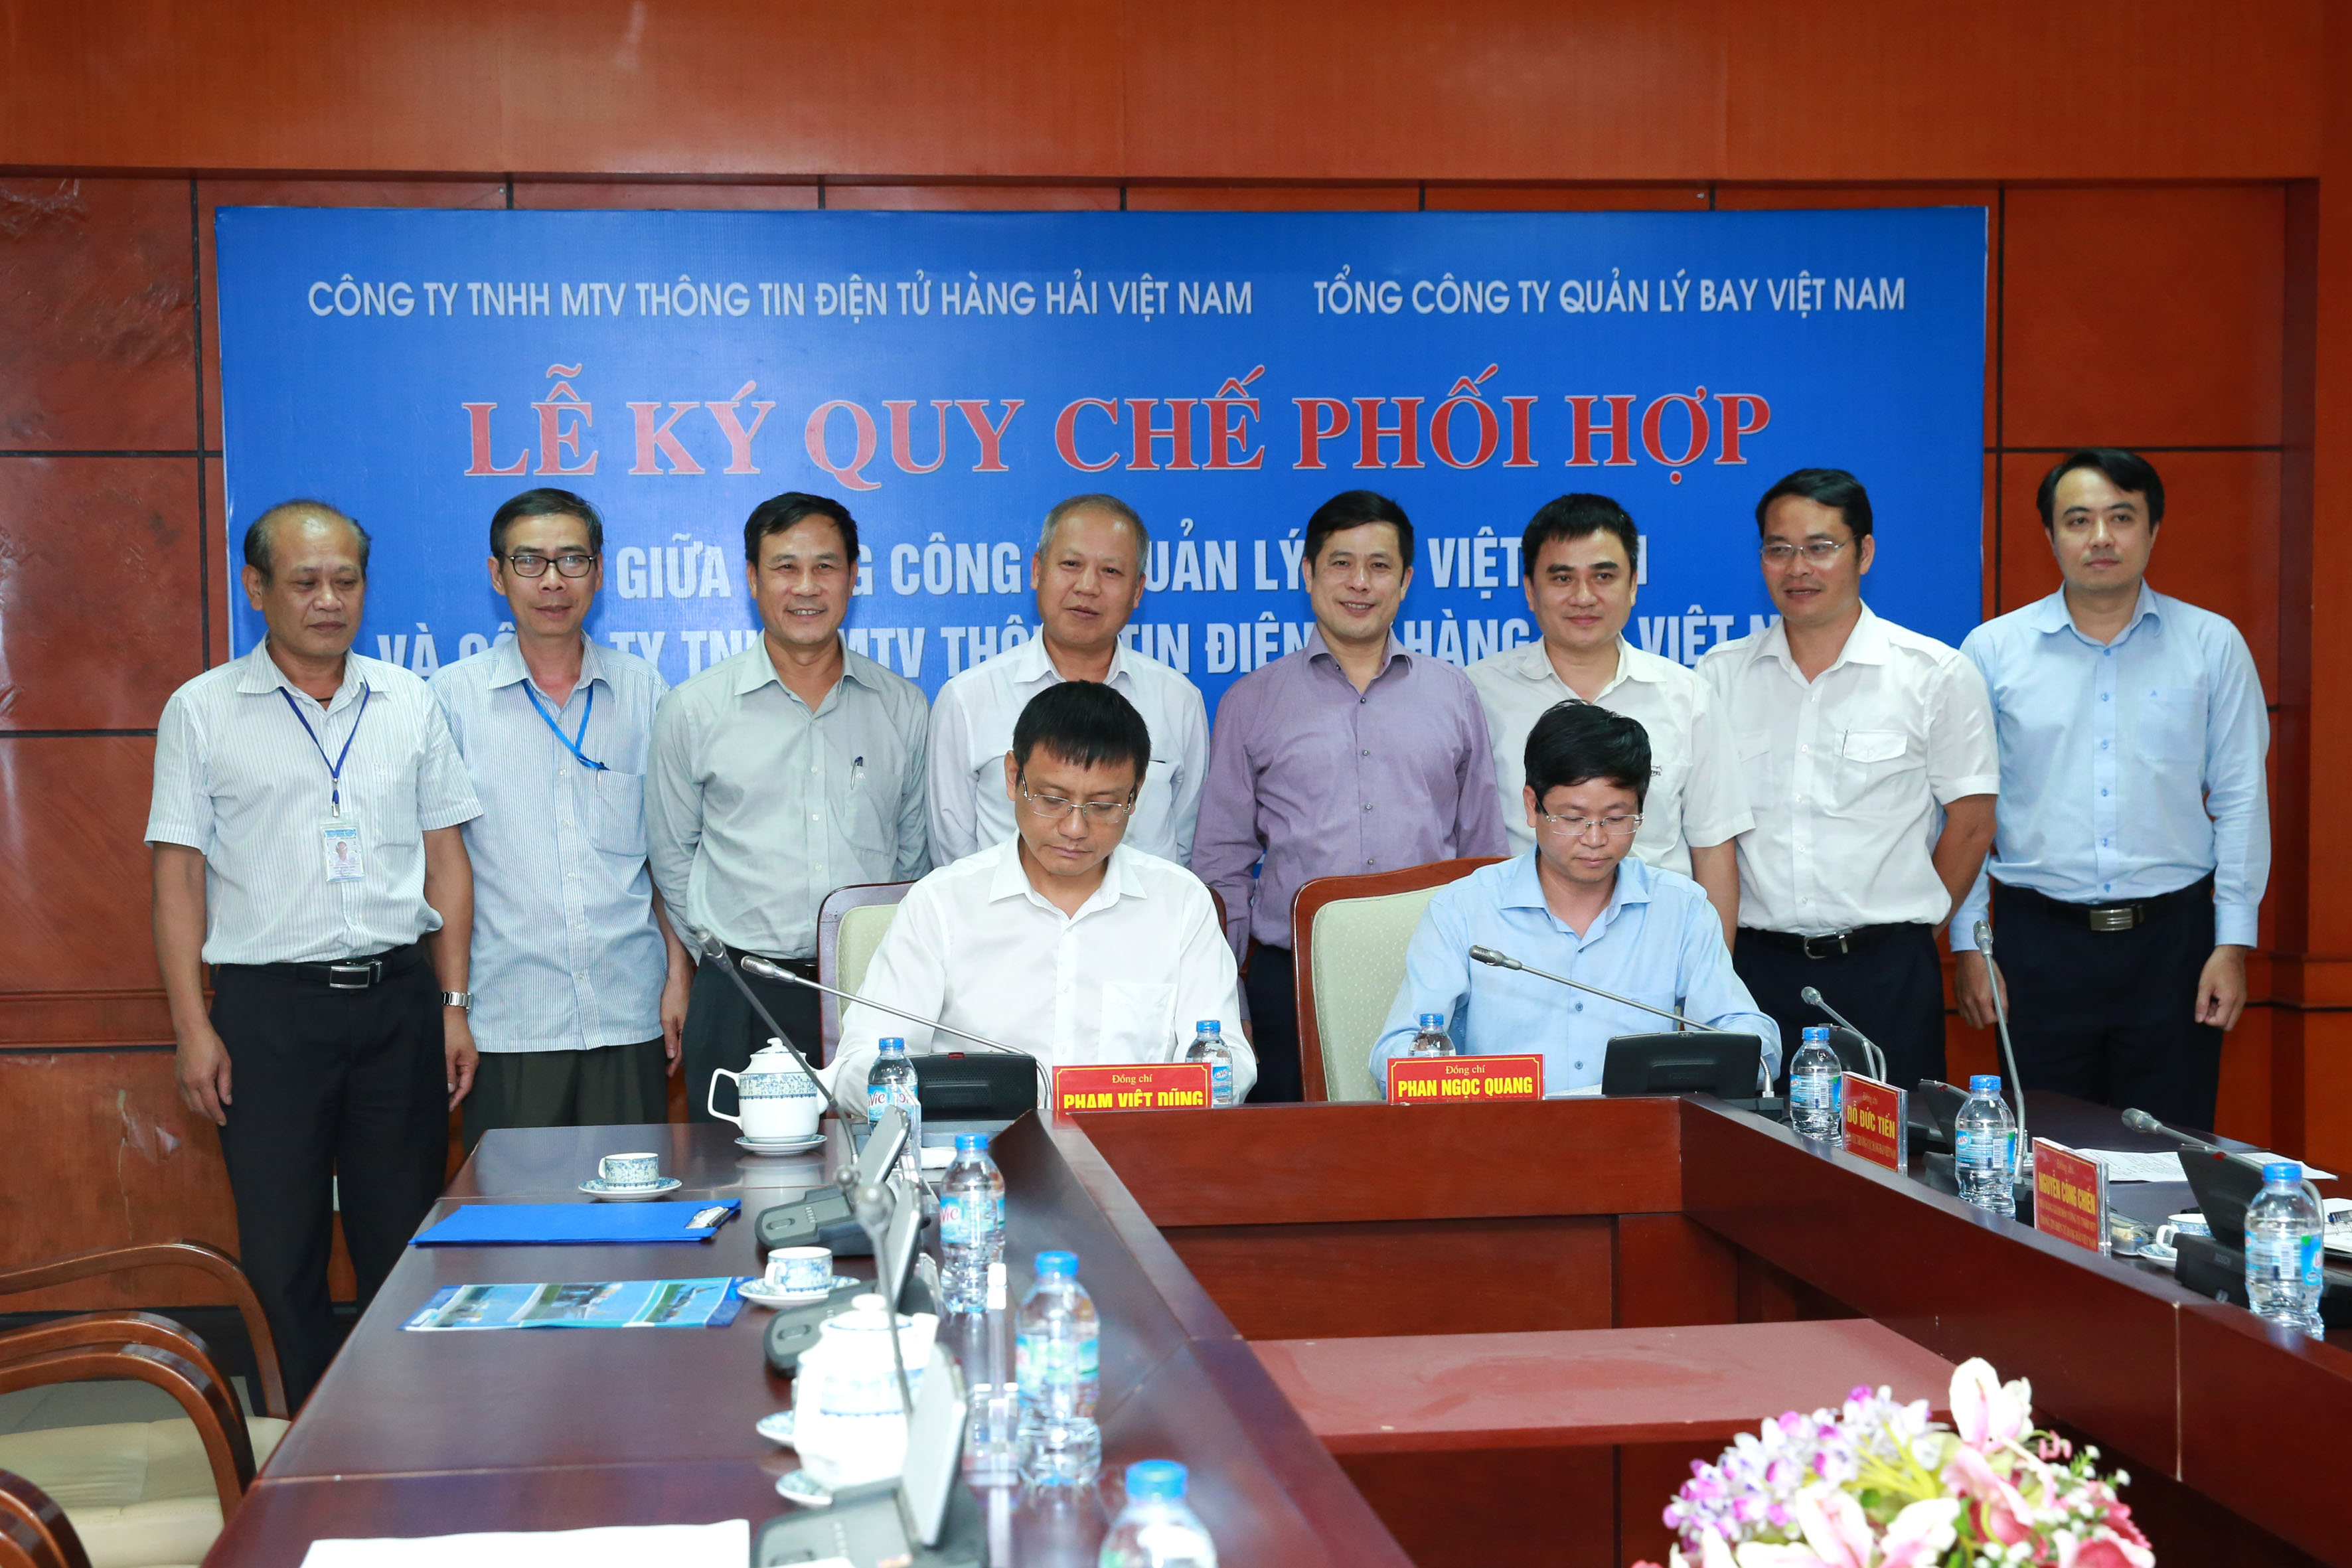 Tổng công ty Quản lý bay Việt Nam và Công ty TNHH một thành viên Thông tin Điện tử Hàng hải Việt Nam ký kết Quy chế phối hợp